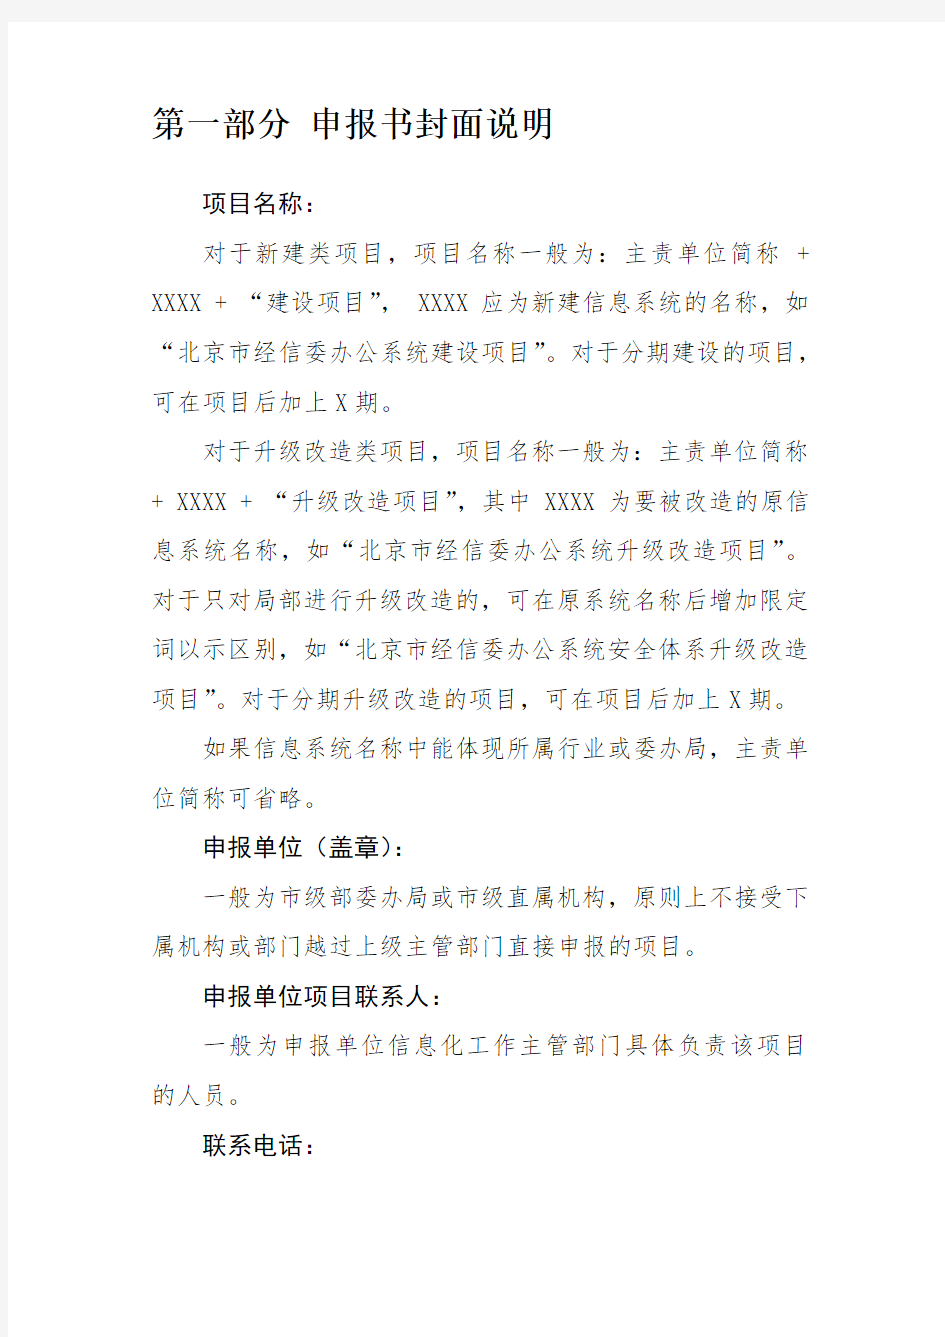 北京市市级部门信息系统升级改造项目申报书编写说明word版本